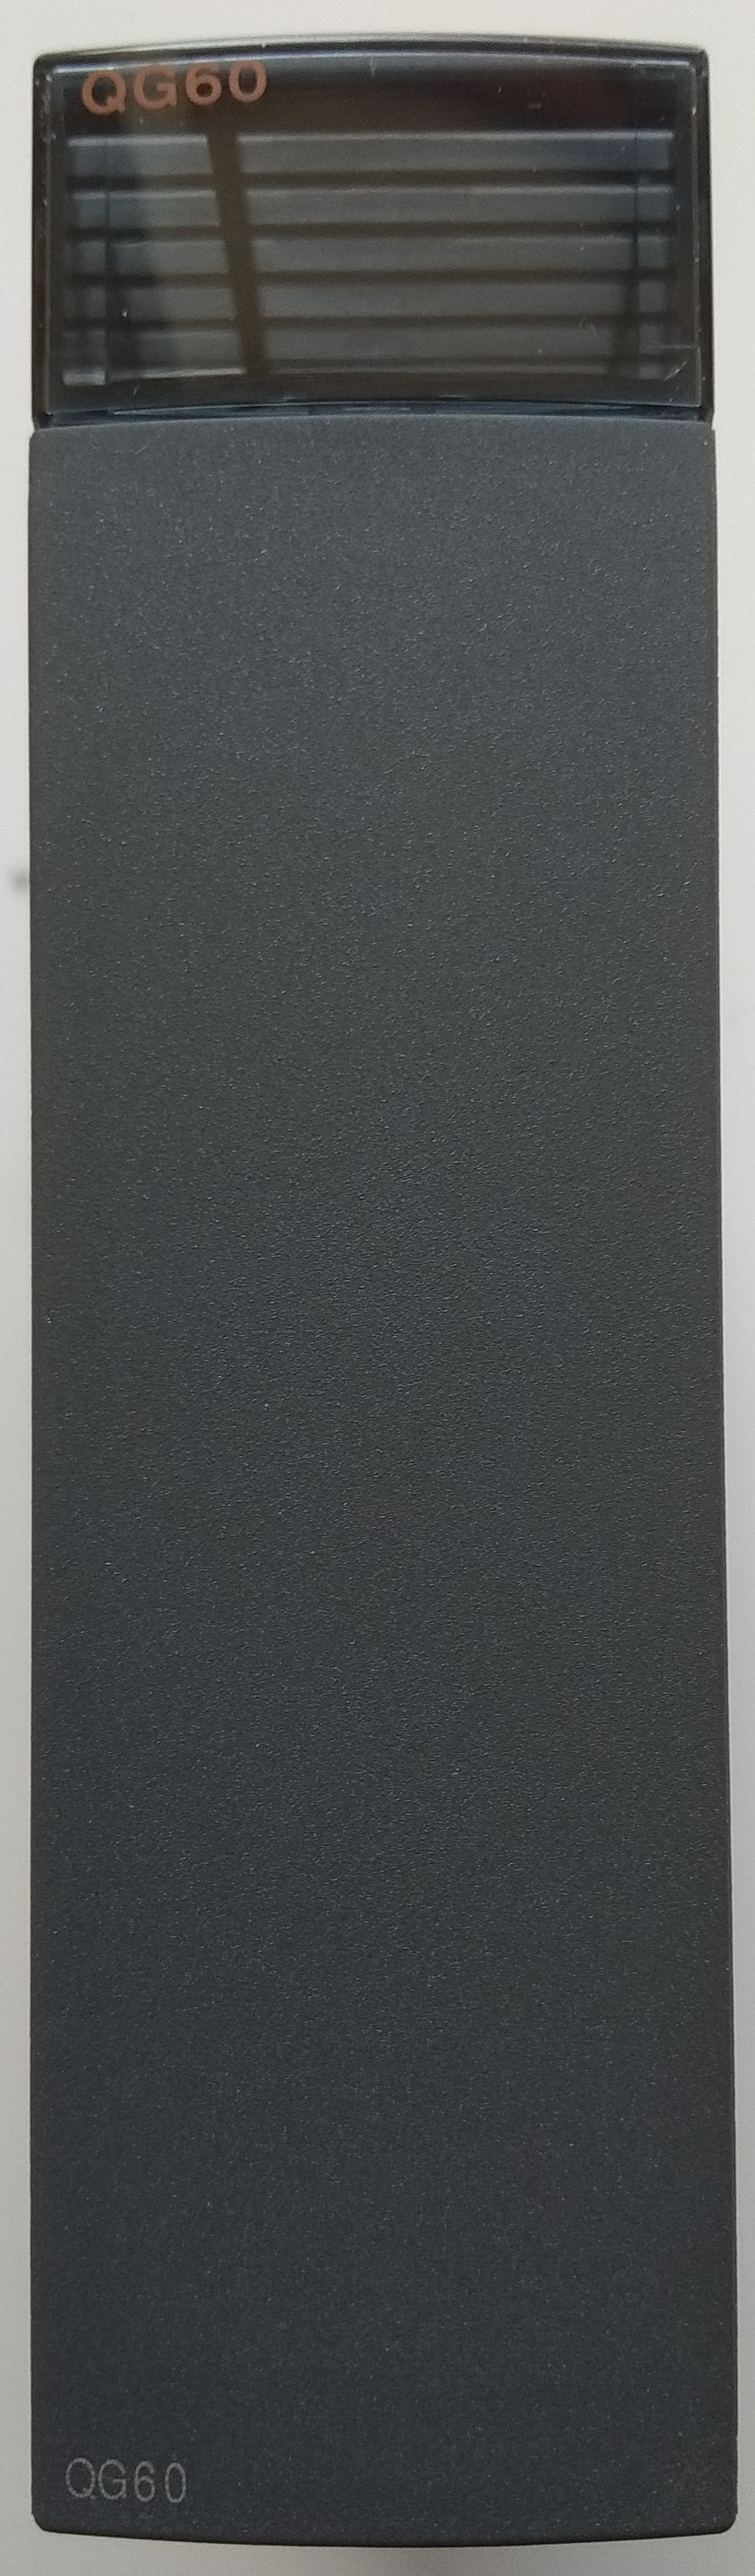 MITSUBISHI QG60 blank unit